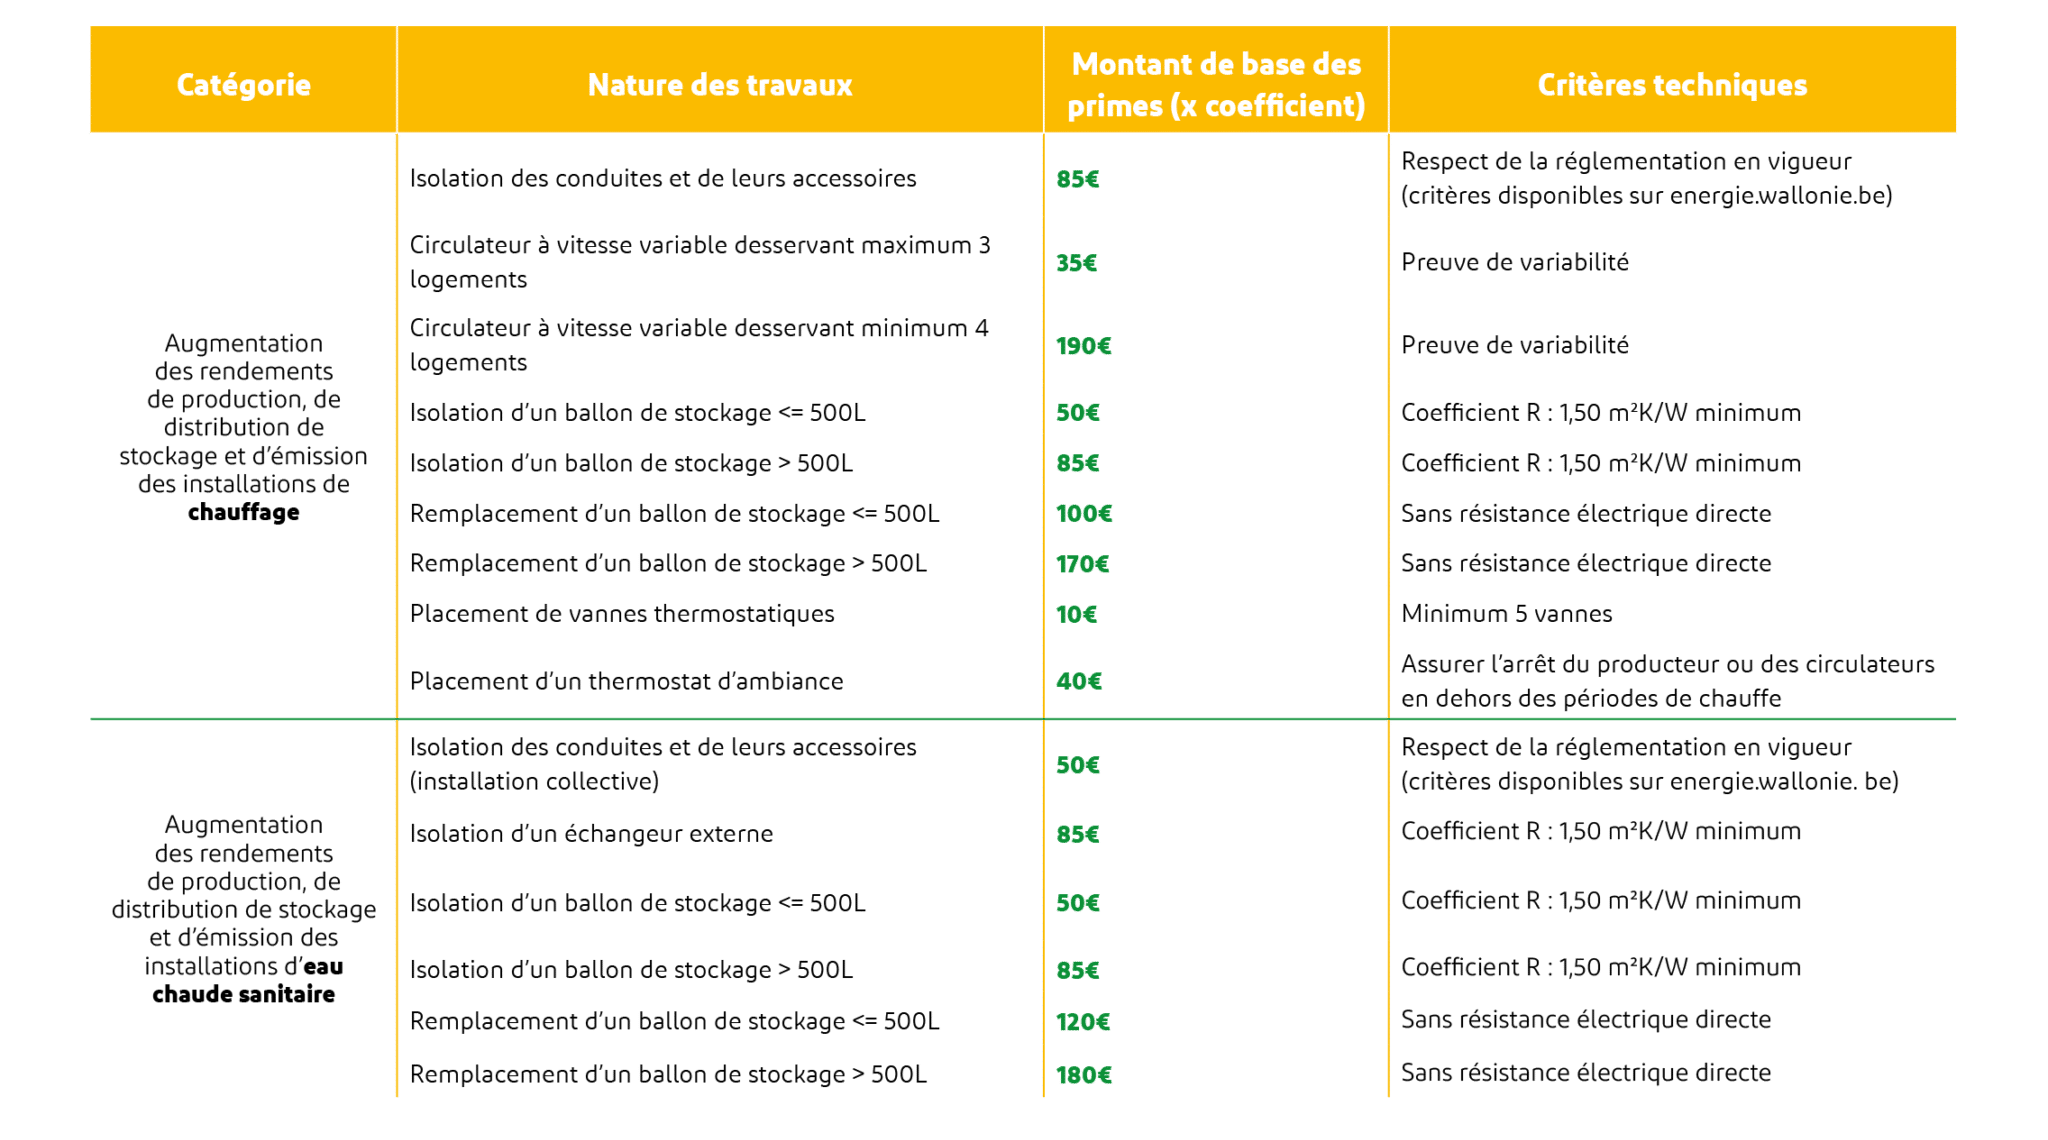 Primes Région Wallonne : Augmentation des rendements de production, de distribution et de stockage des installations de chauffage et d'eau chaude sanitaire